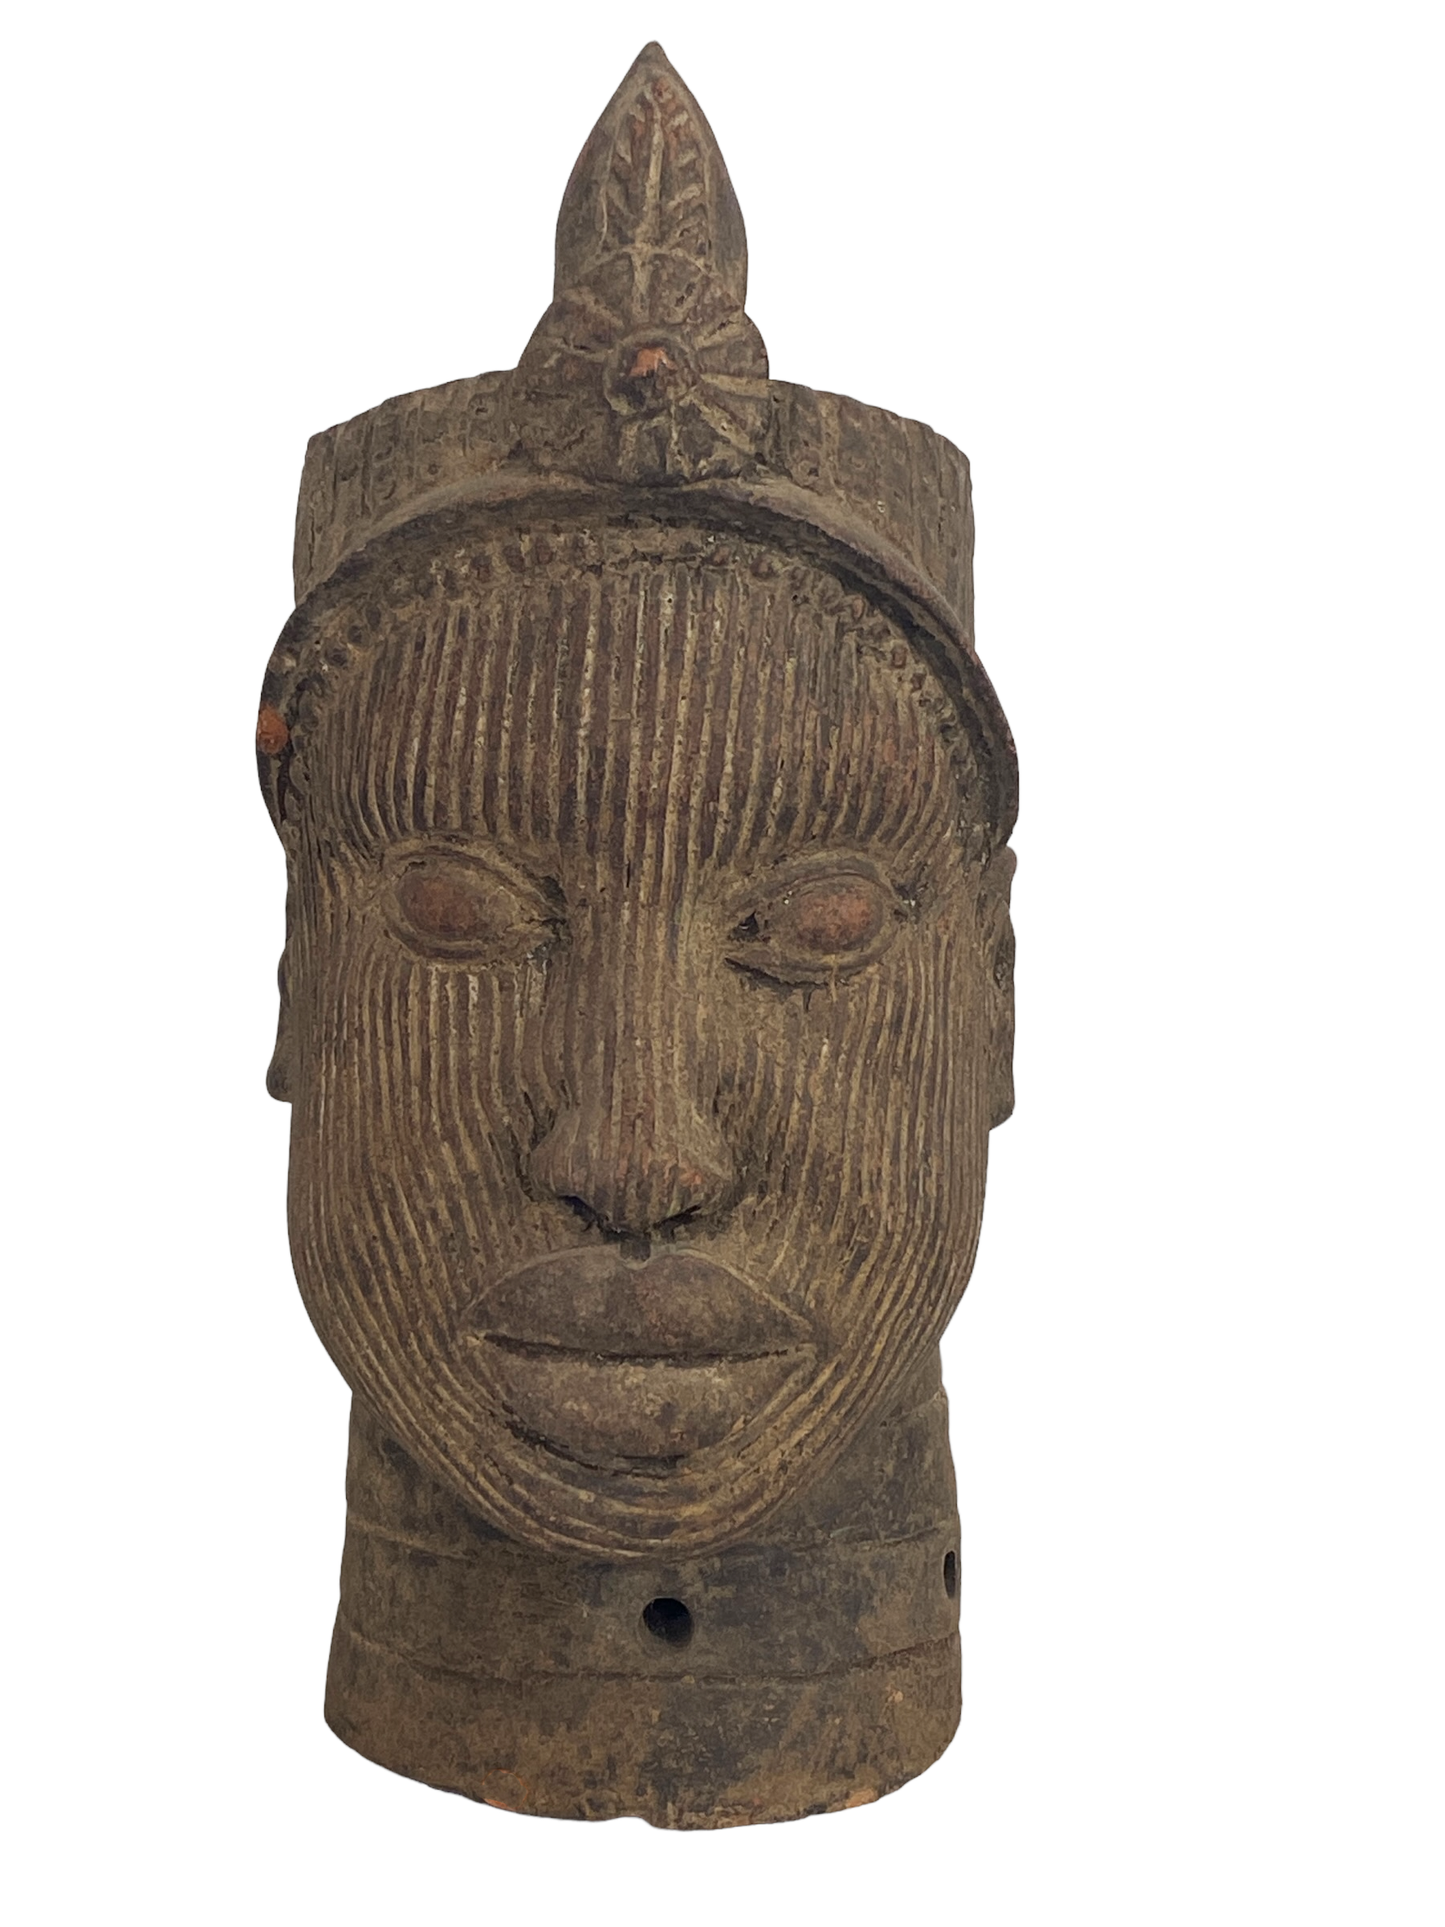 #8223 Large Ife Clay / Terracotta Head of Oni Yoruba Nigeria African 17.5" H